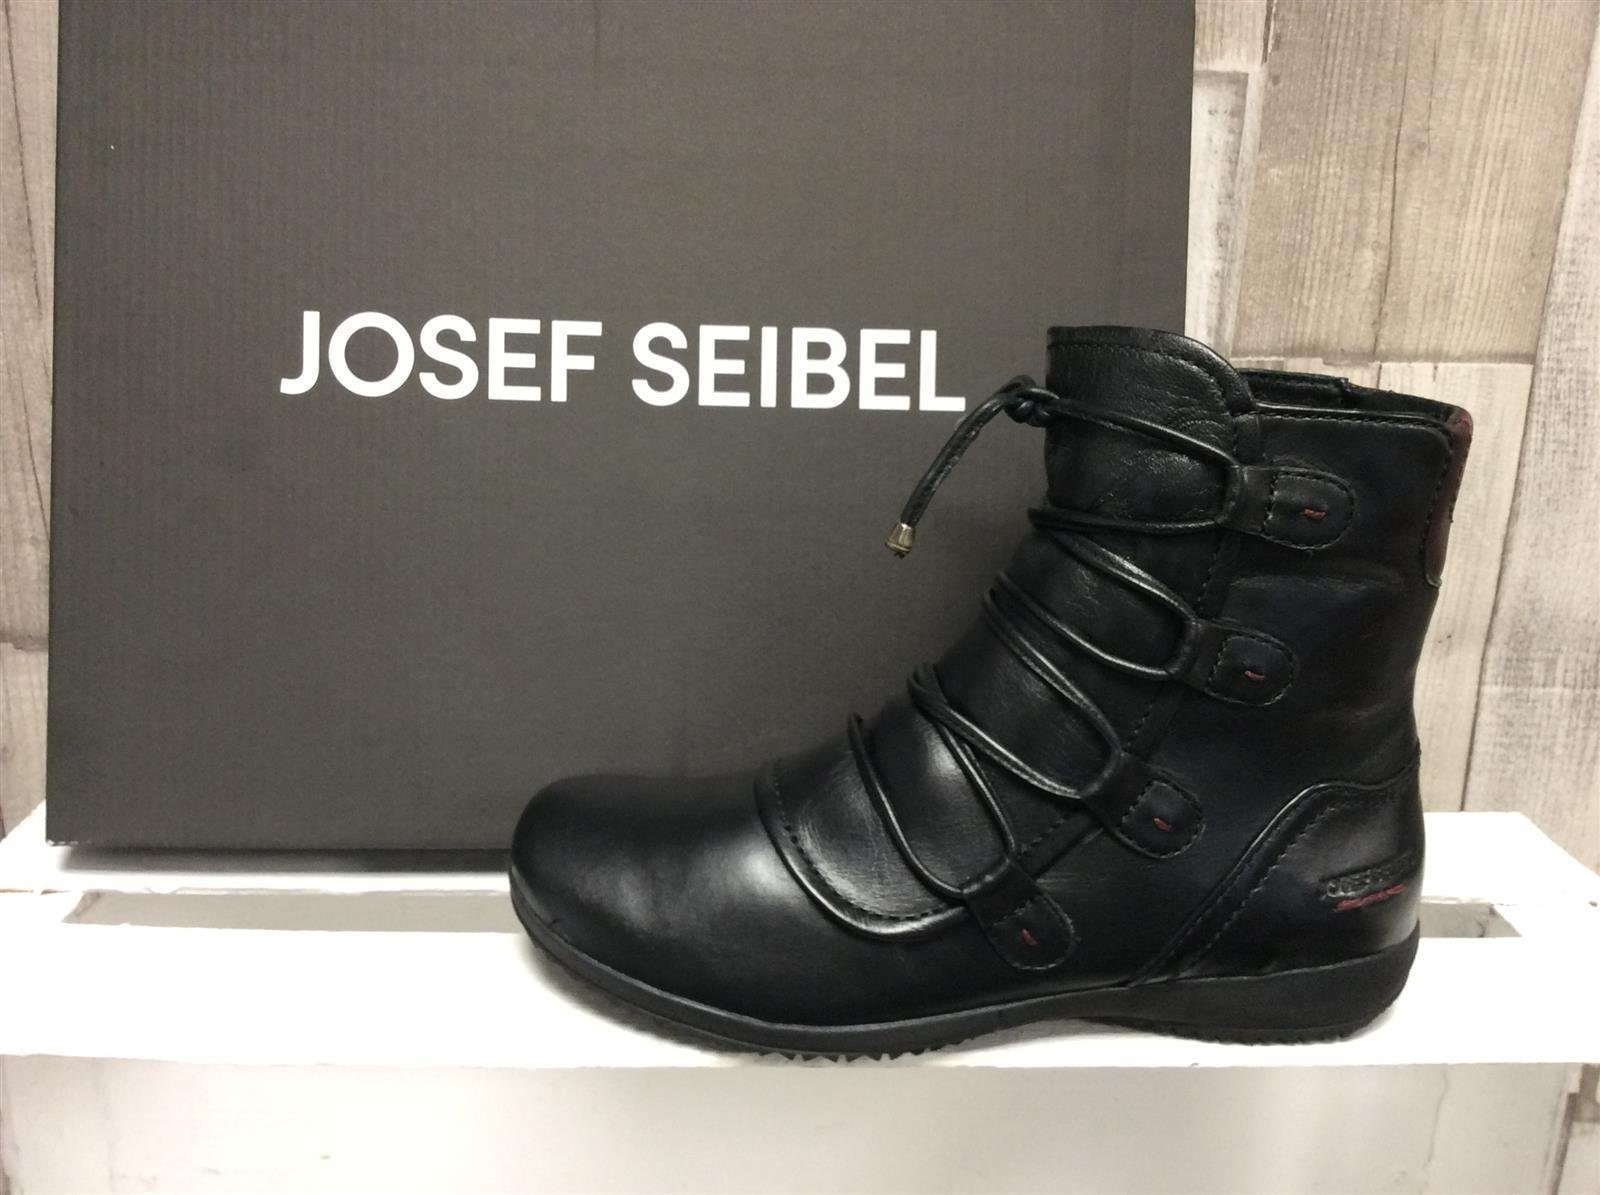 Josef Seibel Josef Seibel Damen Kurzstiefelette schwarz mit Zierschnürung Stiefelette schwarz-kombi